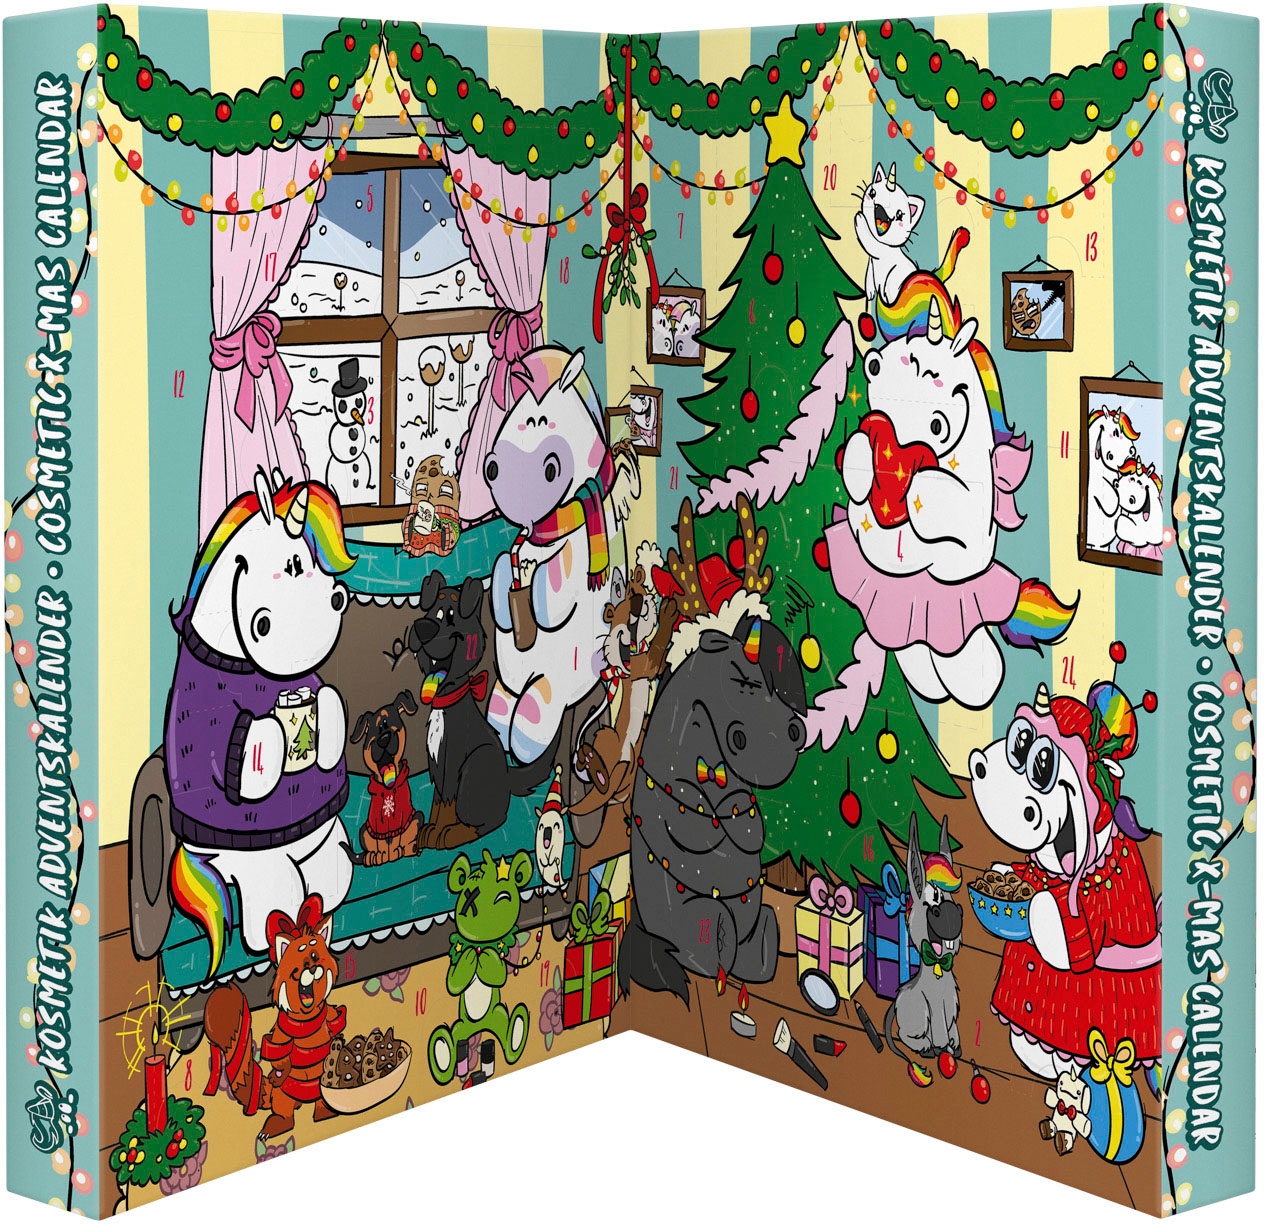 Pummel & Friends Adventskalender »Pummel & Friends - Beauty and Accessoires Advent«, ab 6 Jahren